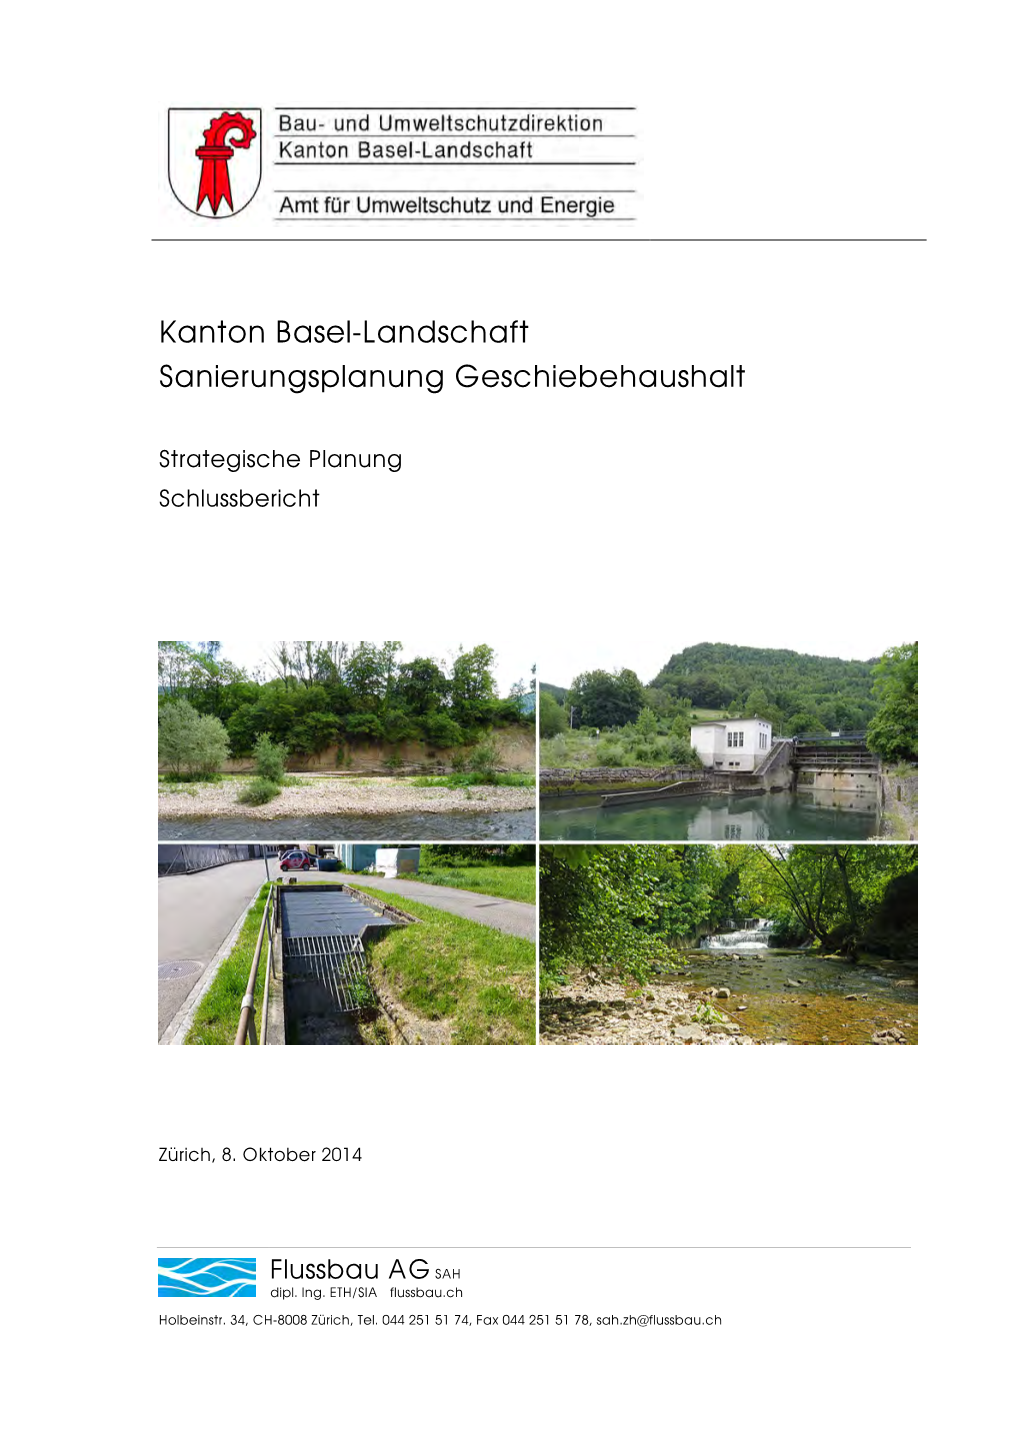 Kanton Basel-Landschaft Sanierungsplanung Geschiebehaushalt